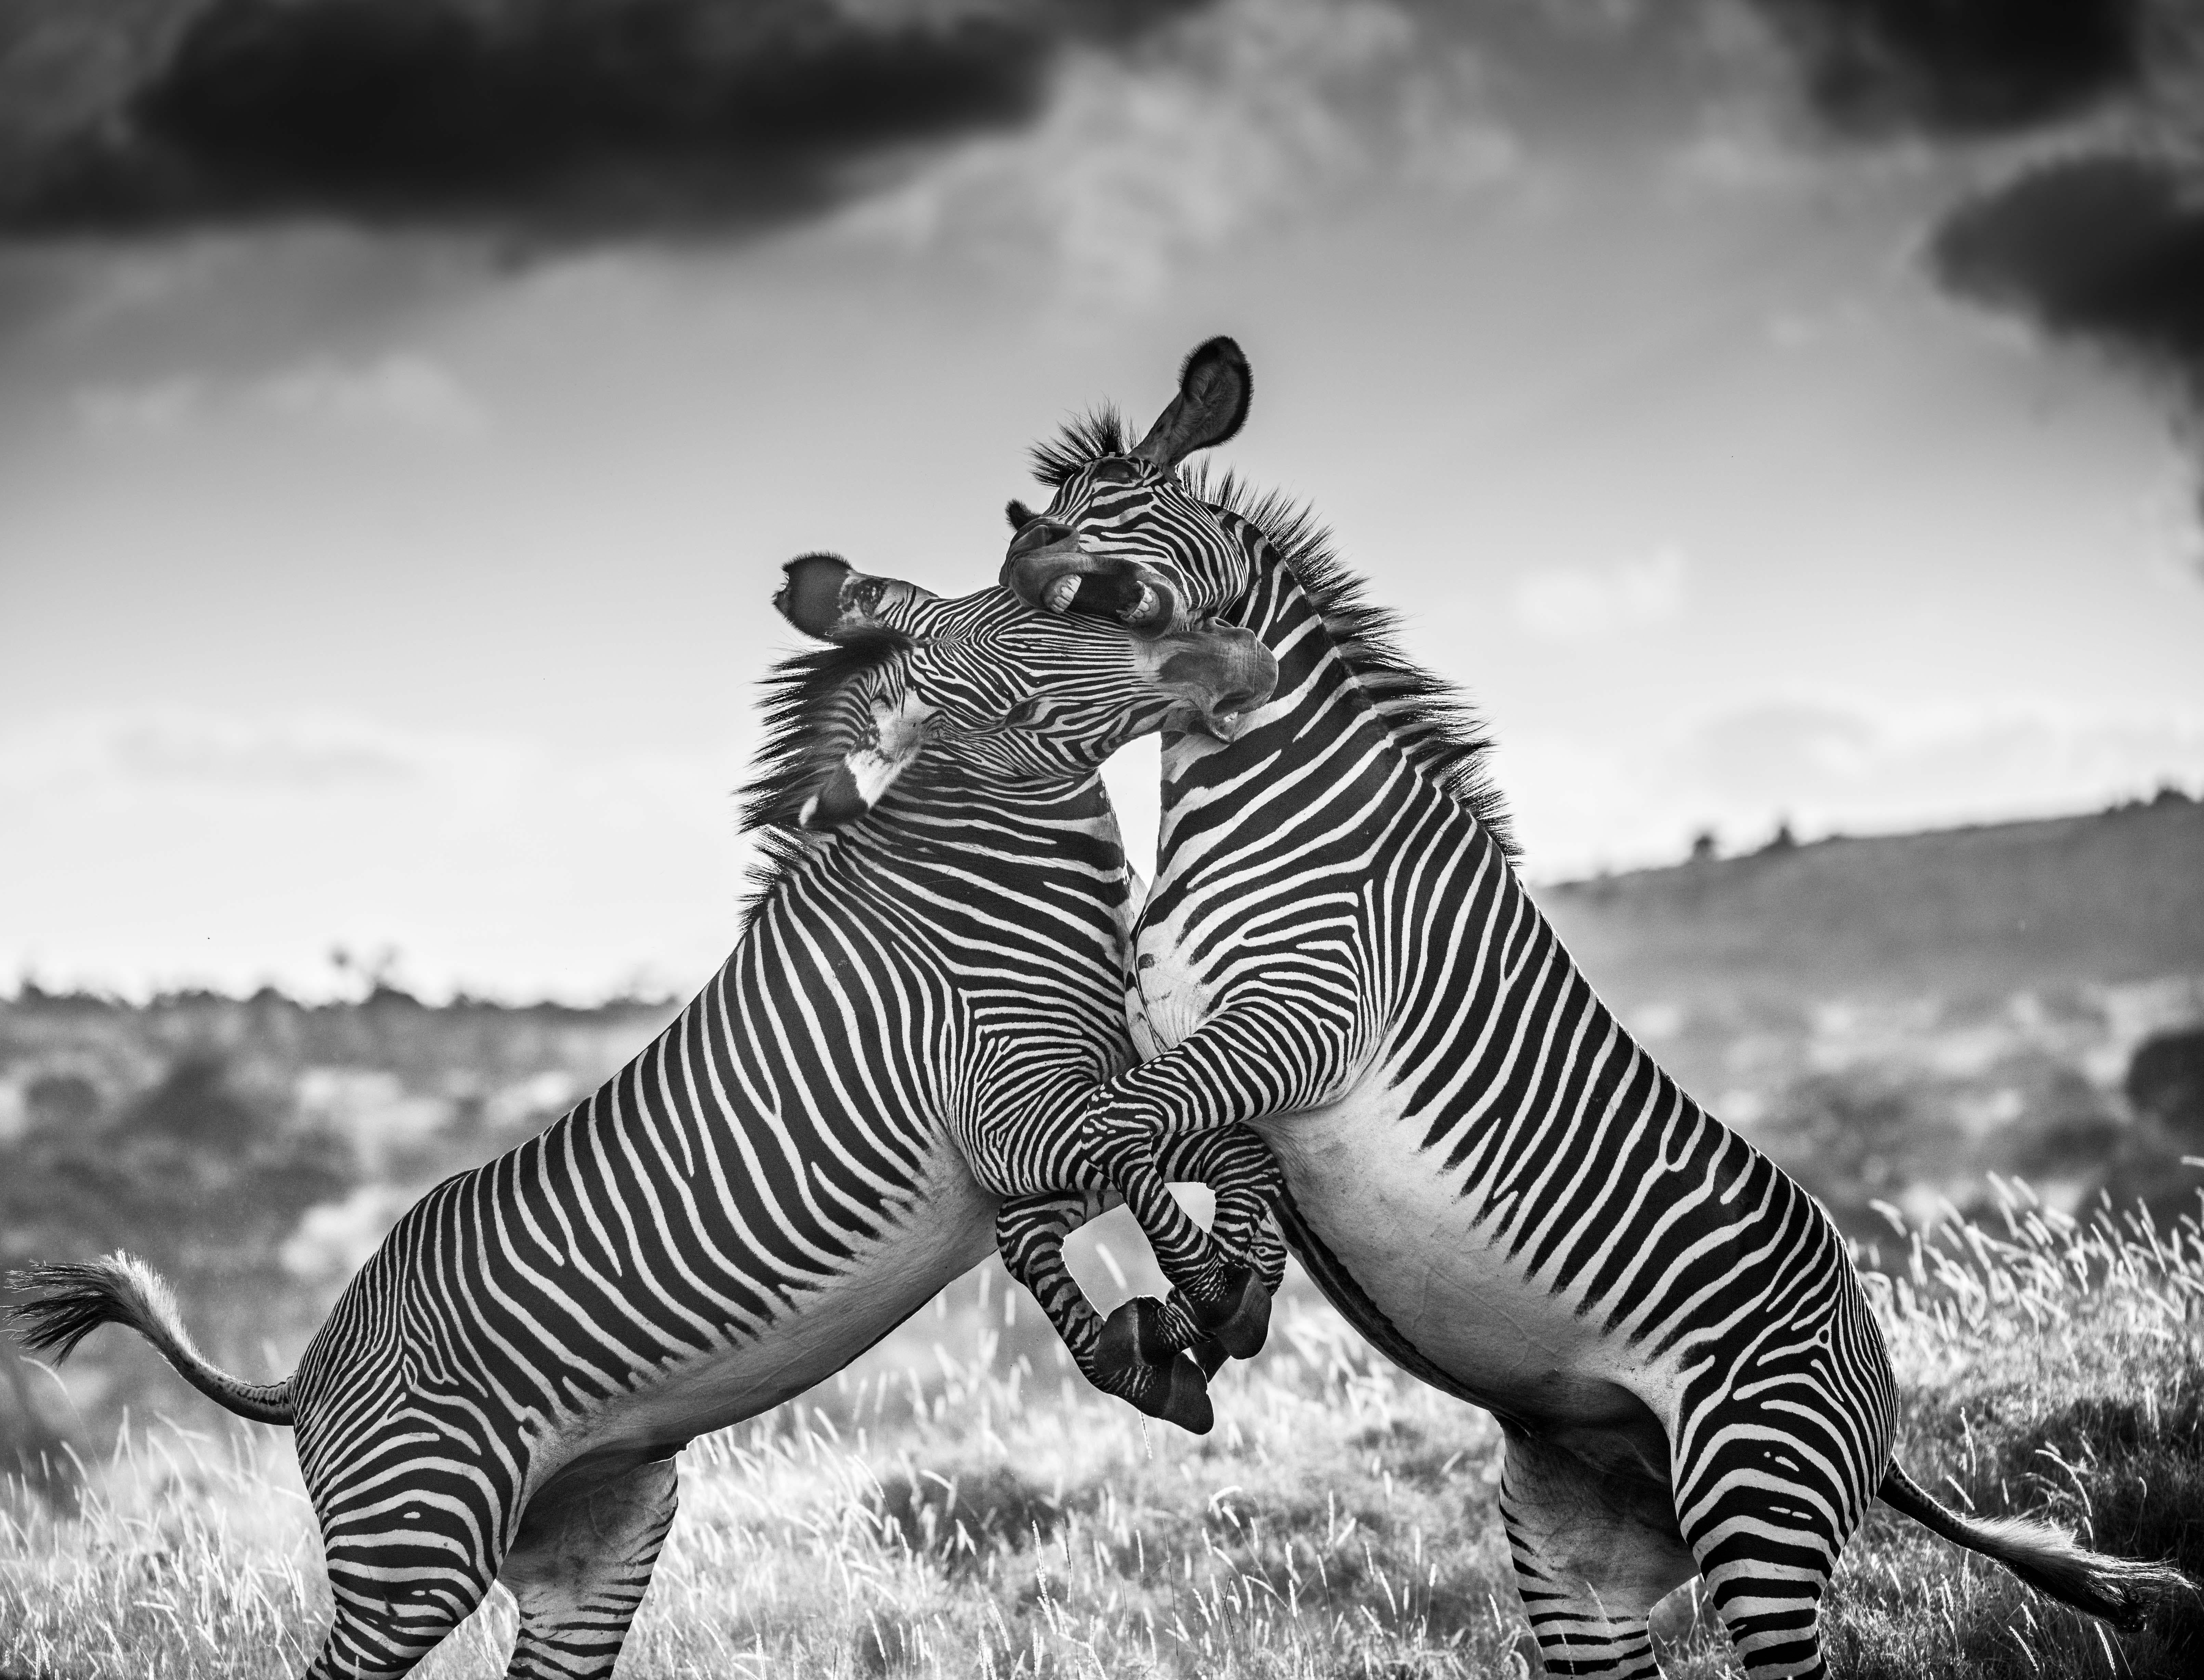 James Lewin - Duel at Dusk, Borana, Kenya, photographie 2019, imprimée d'après